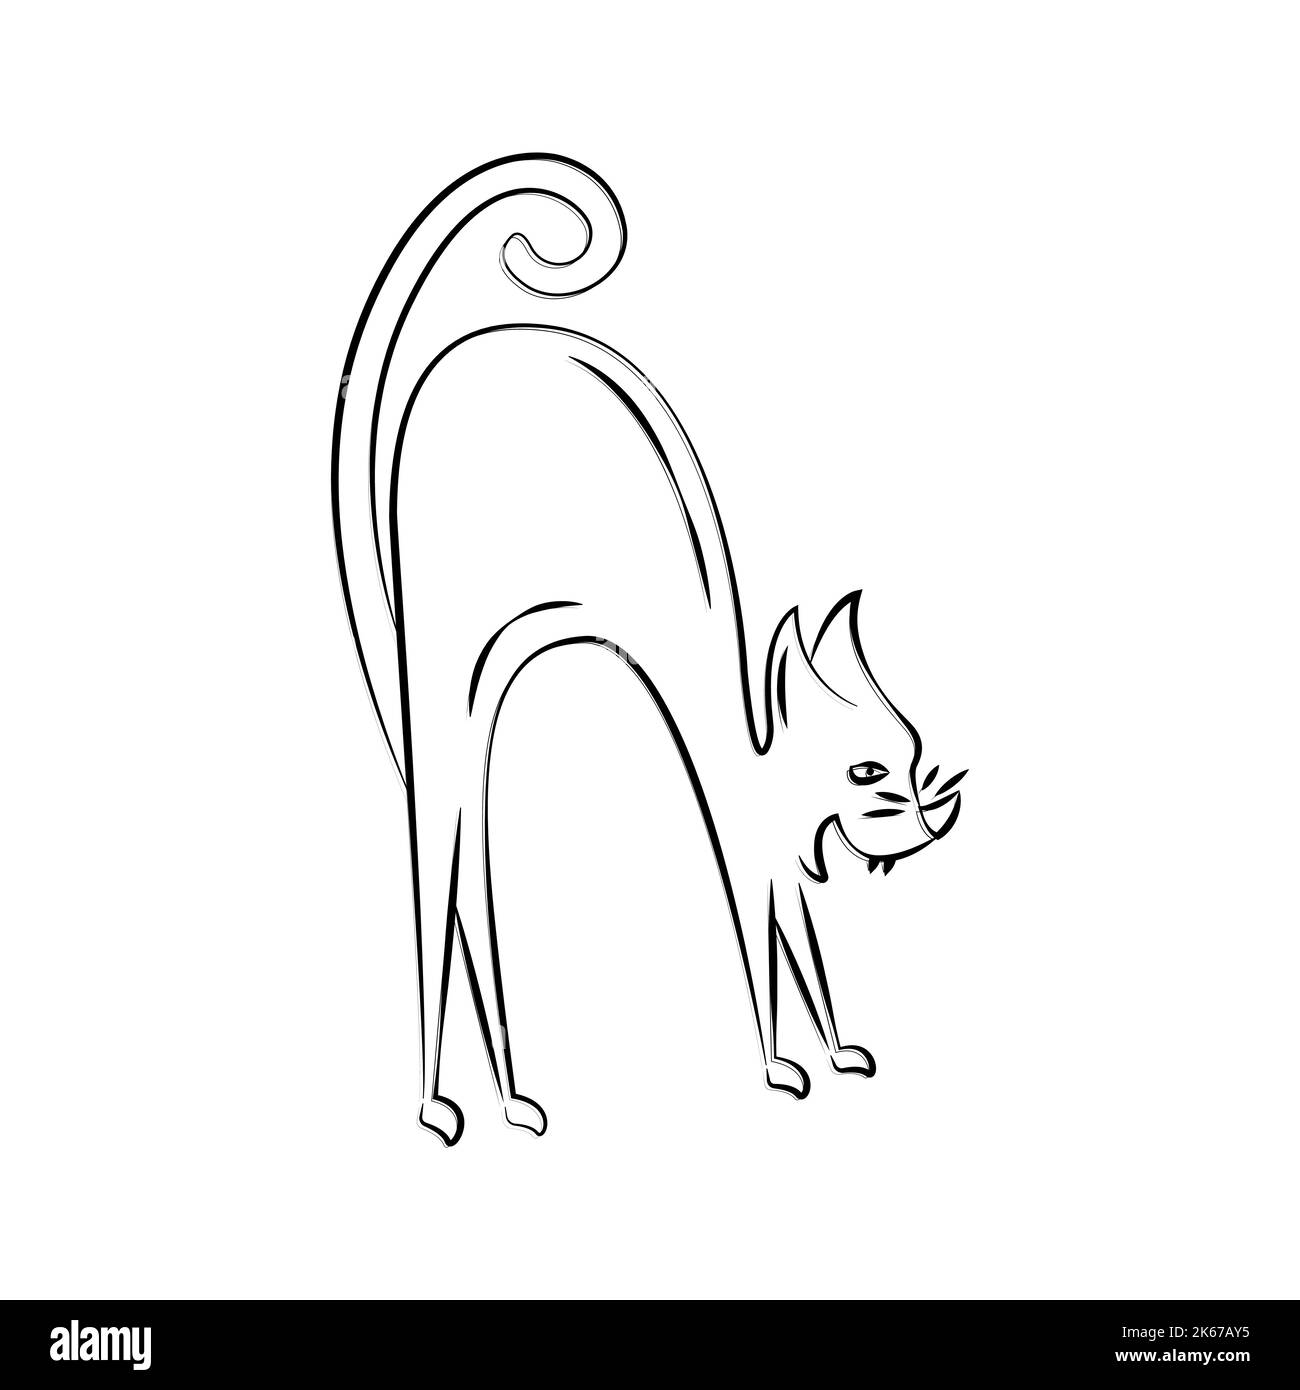 Le chat en colère siffle. Illustration linéaire simple en forme de doodle. Esquisse d'un animal. Clipart pour la conception de cartes, autocollants, décoration d'Halloween. Illustration de Vecteur